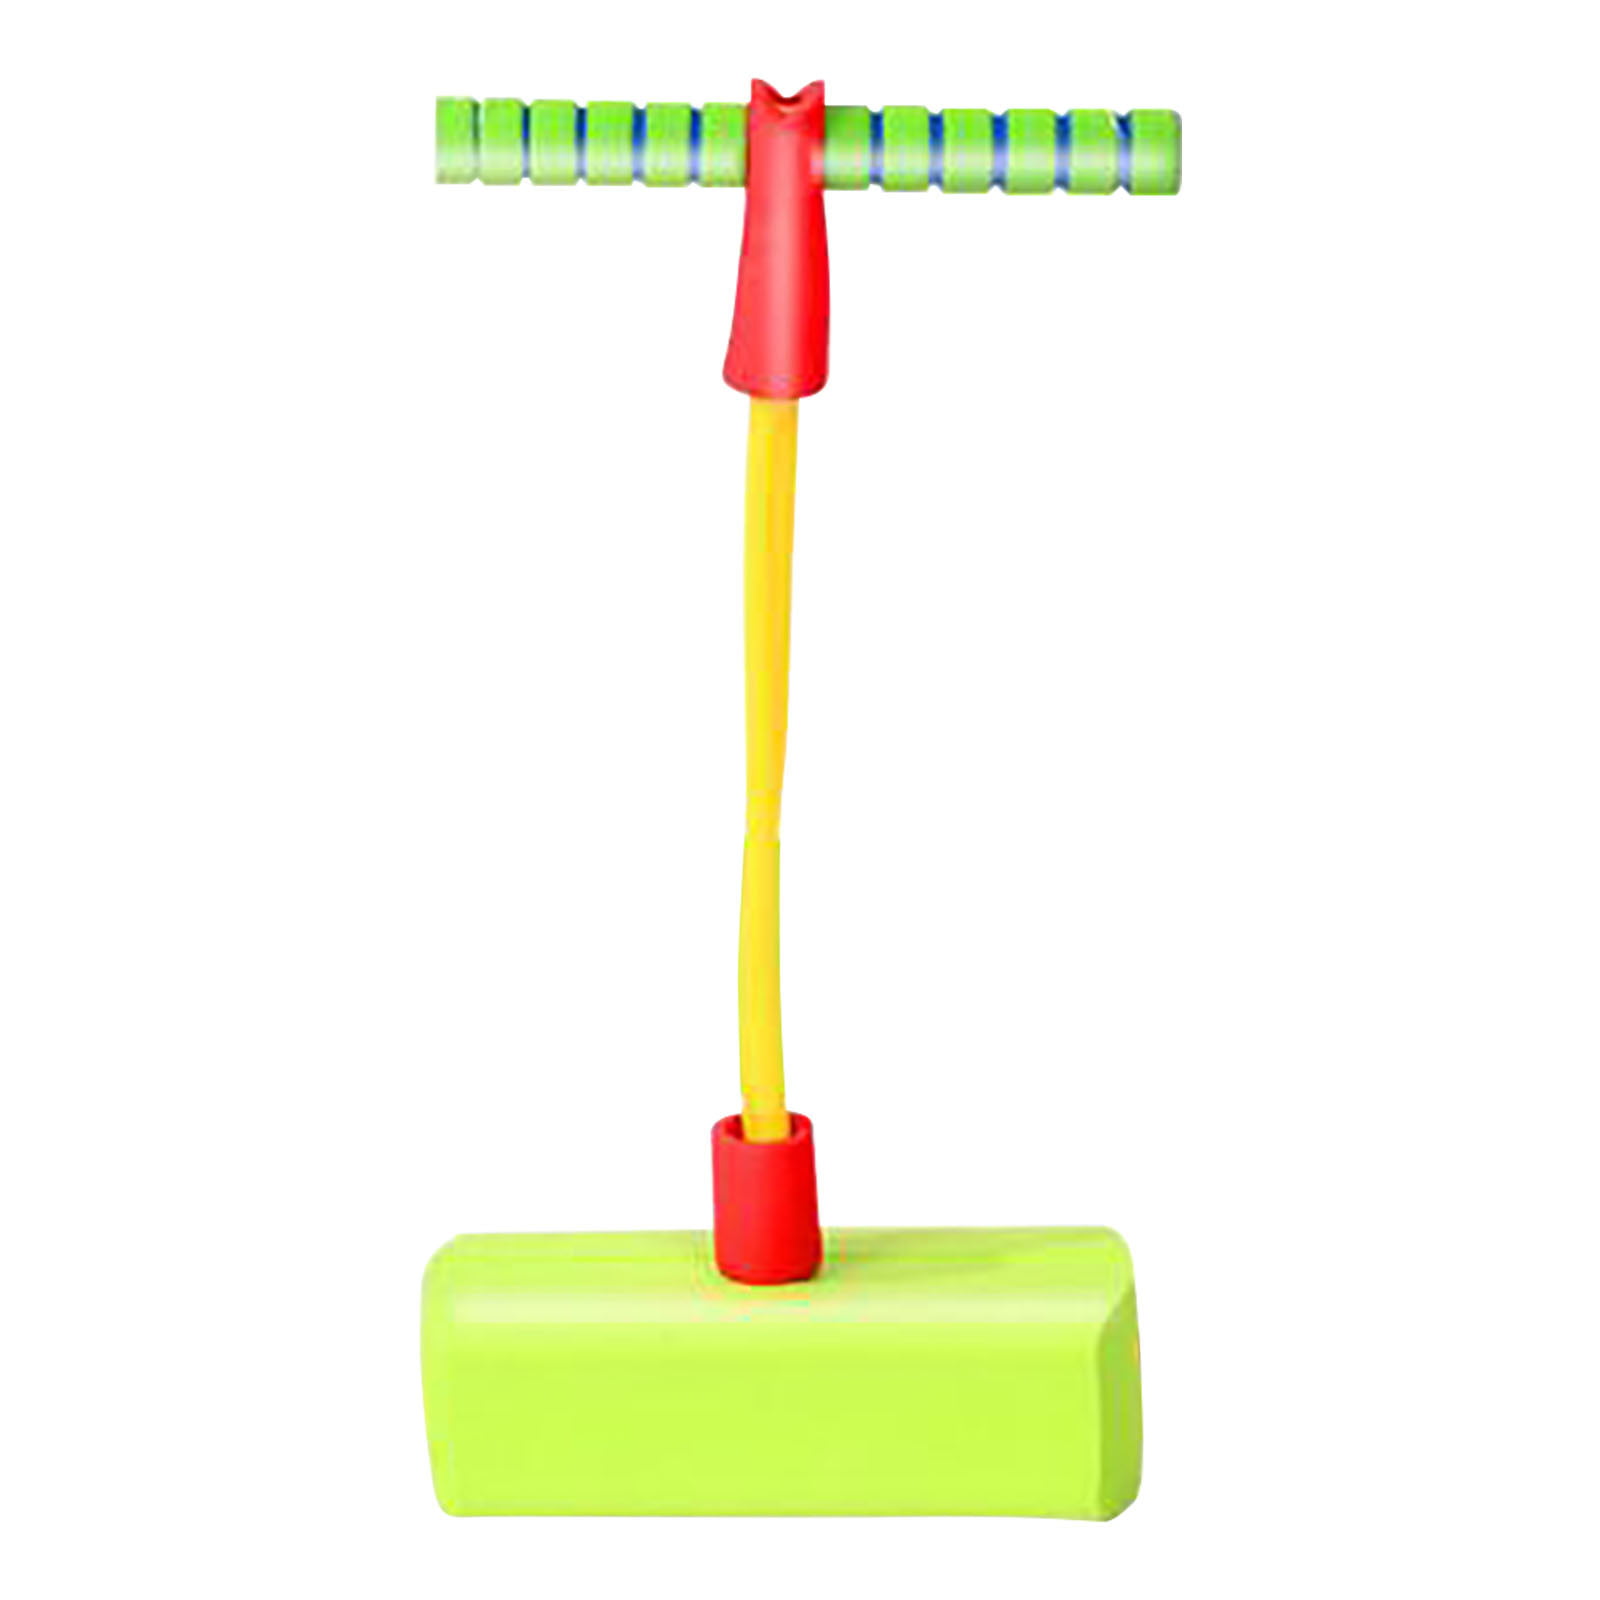 Children's Foam Spring Jumper, Spring Stick, Children's Toy